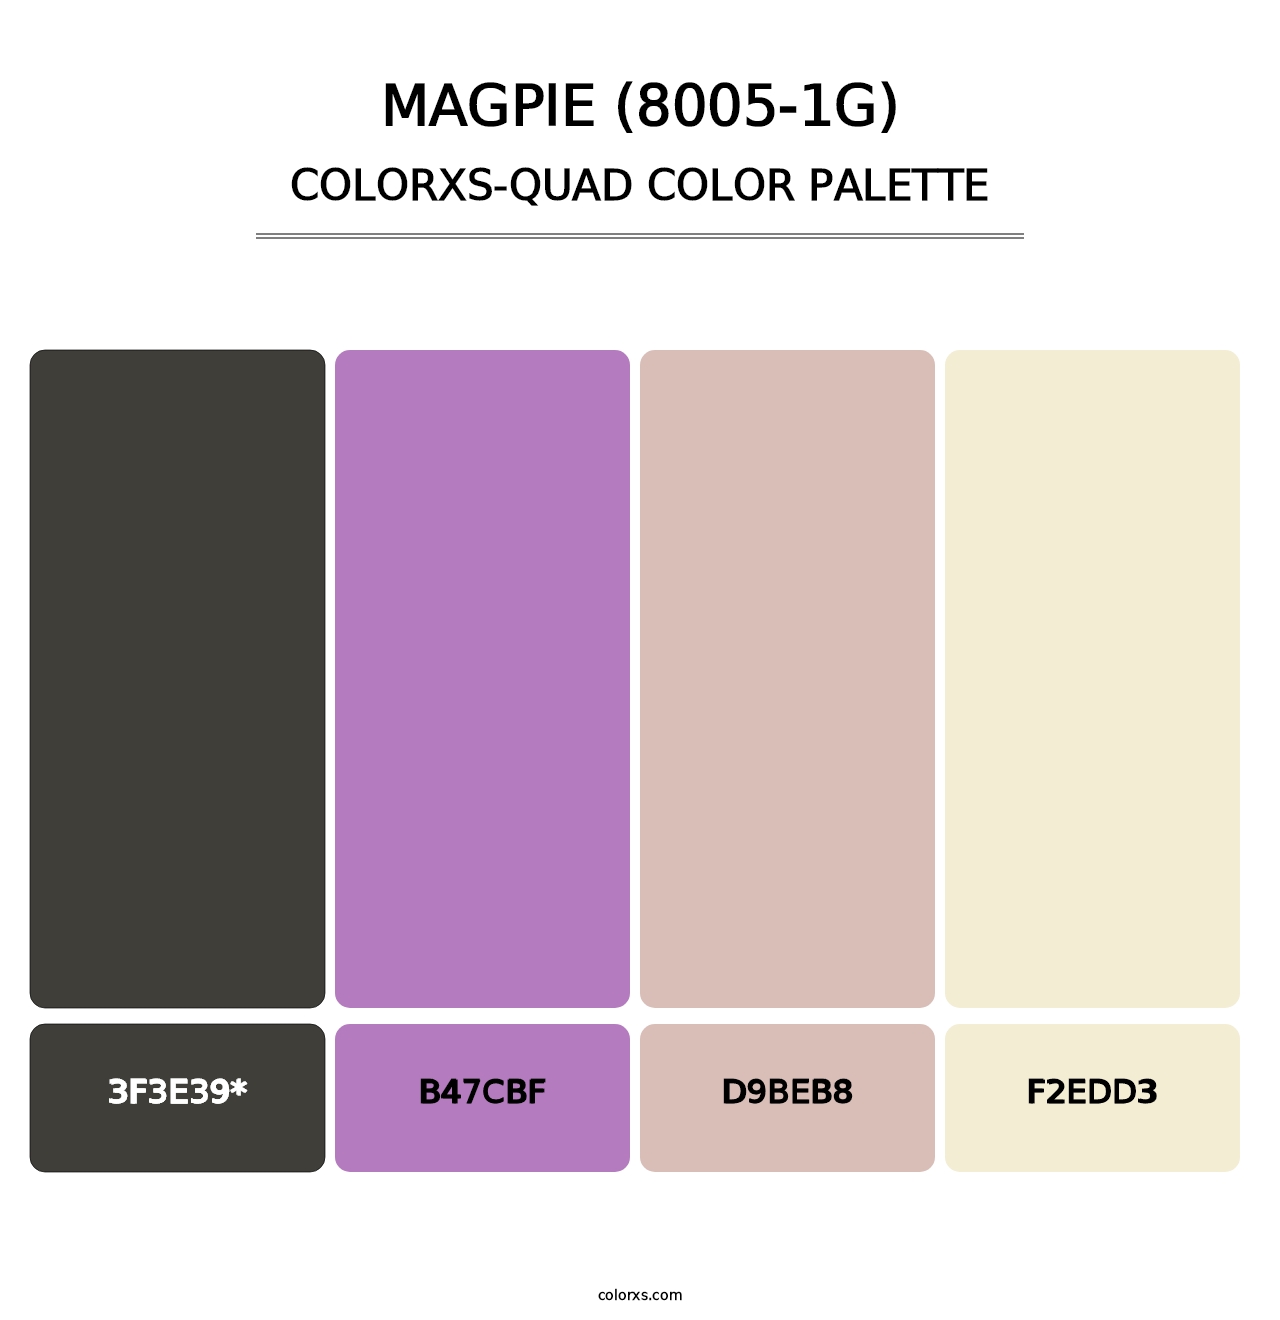 Magpie (8005-1G) - Colorxs Quad Palette